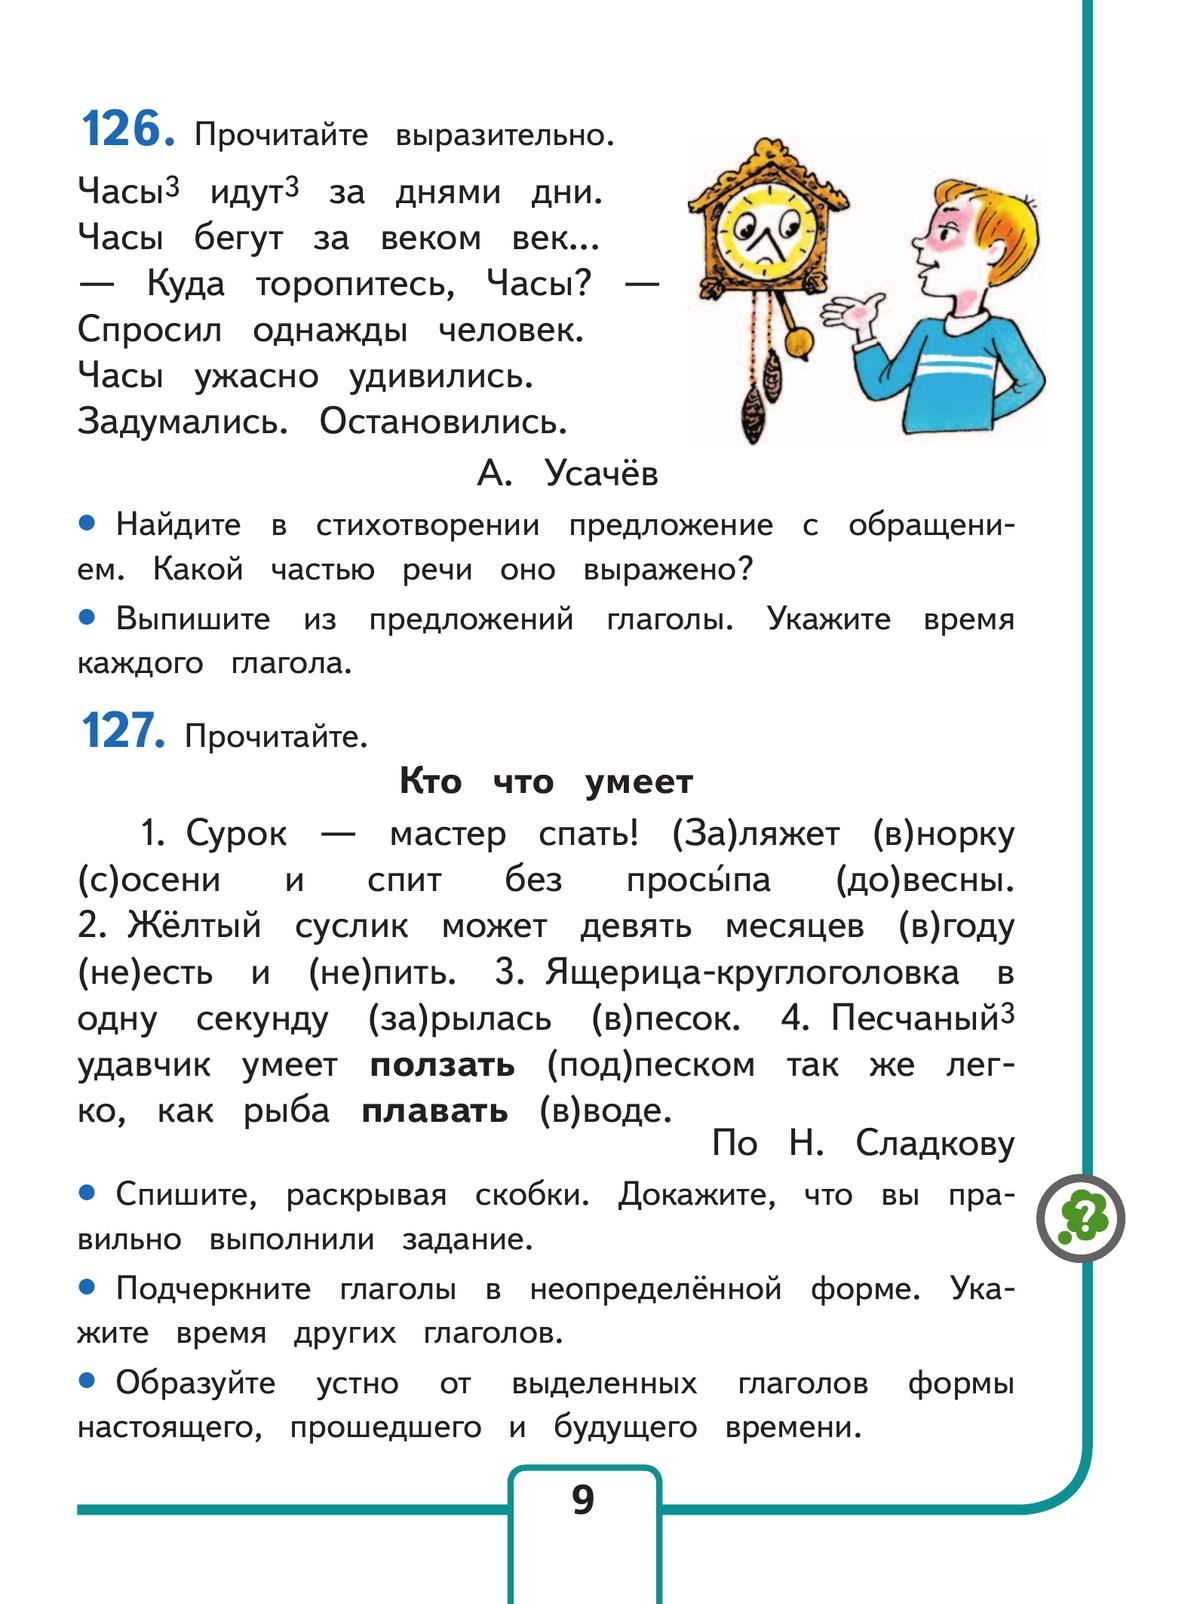 Русский язык. 4 класс. Учебное пособие. В 5 ч. Часть 2 (для слабовидящих обучающихся) 11